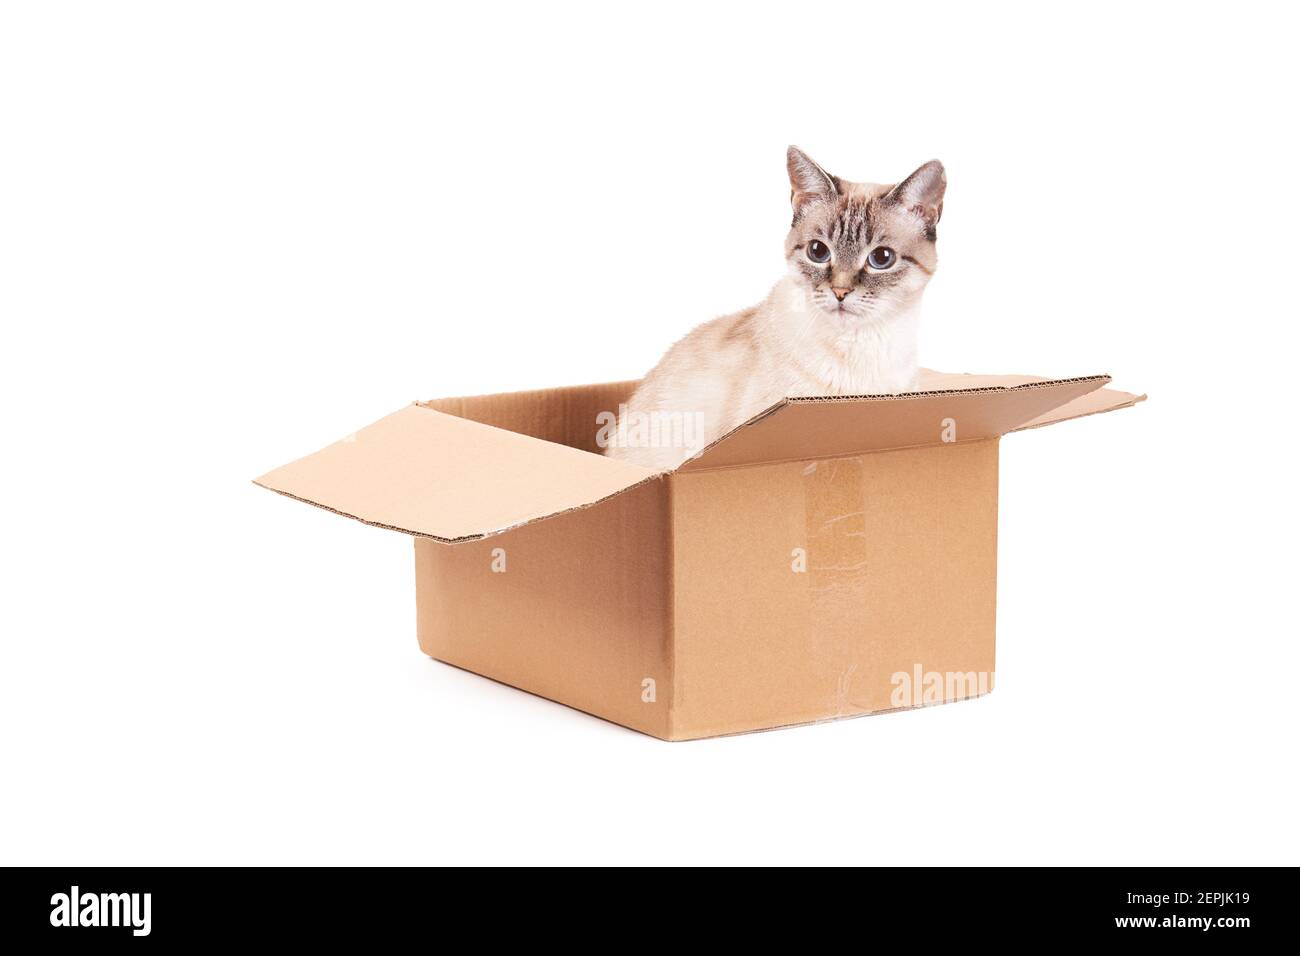 Le chat tabby domestique est assis dans une boîte en carton. Isolé sur un fond blanc. Le concept du courrier, de la livraison et de l'expédition Banque D'Images